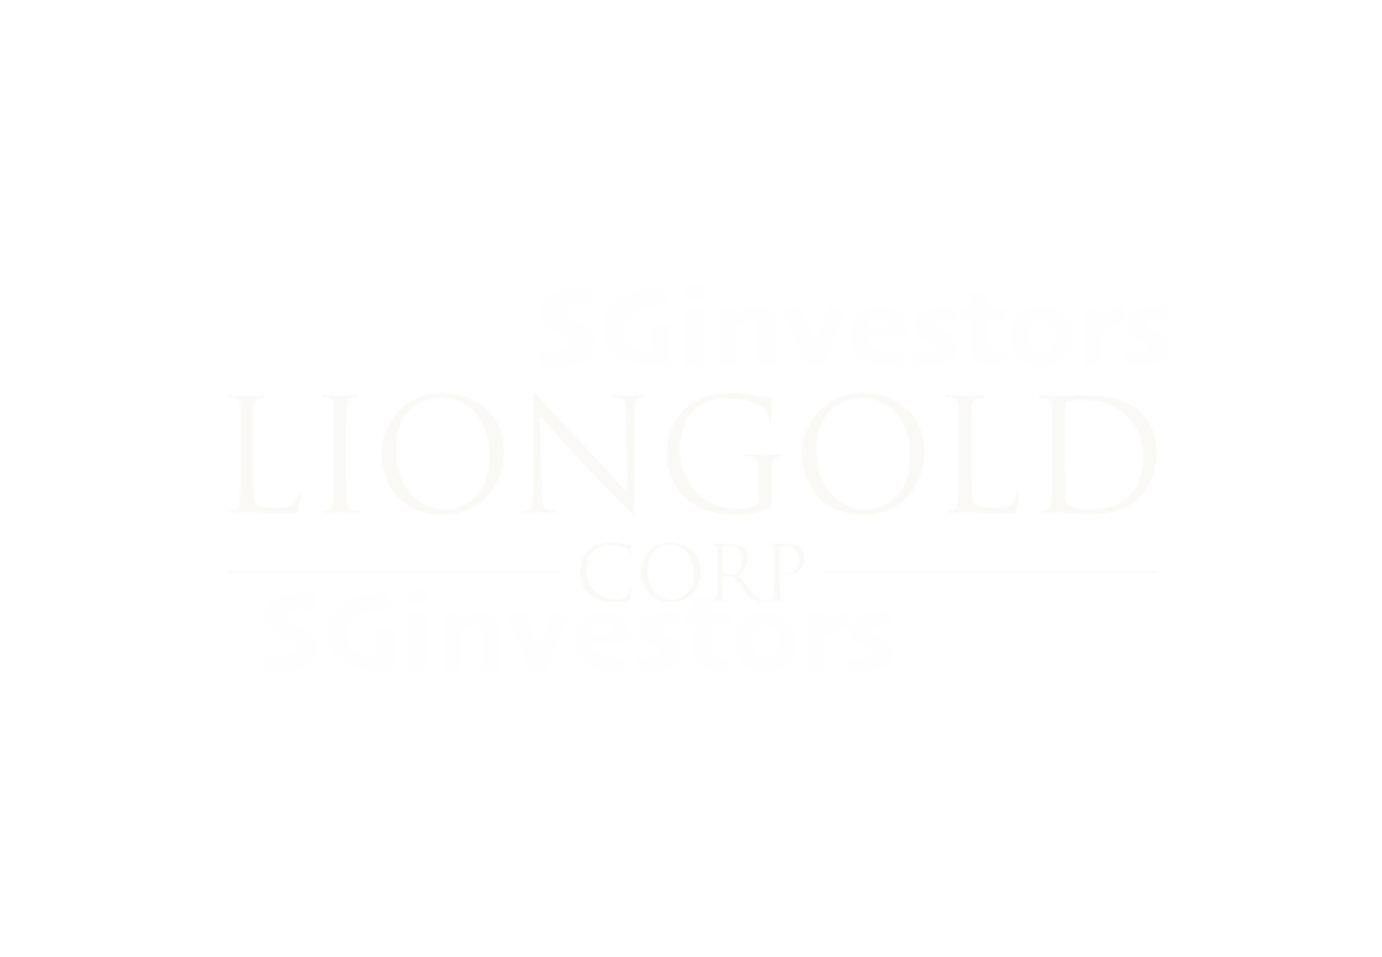 LionGold Corporation